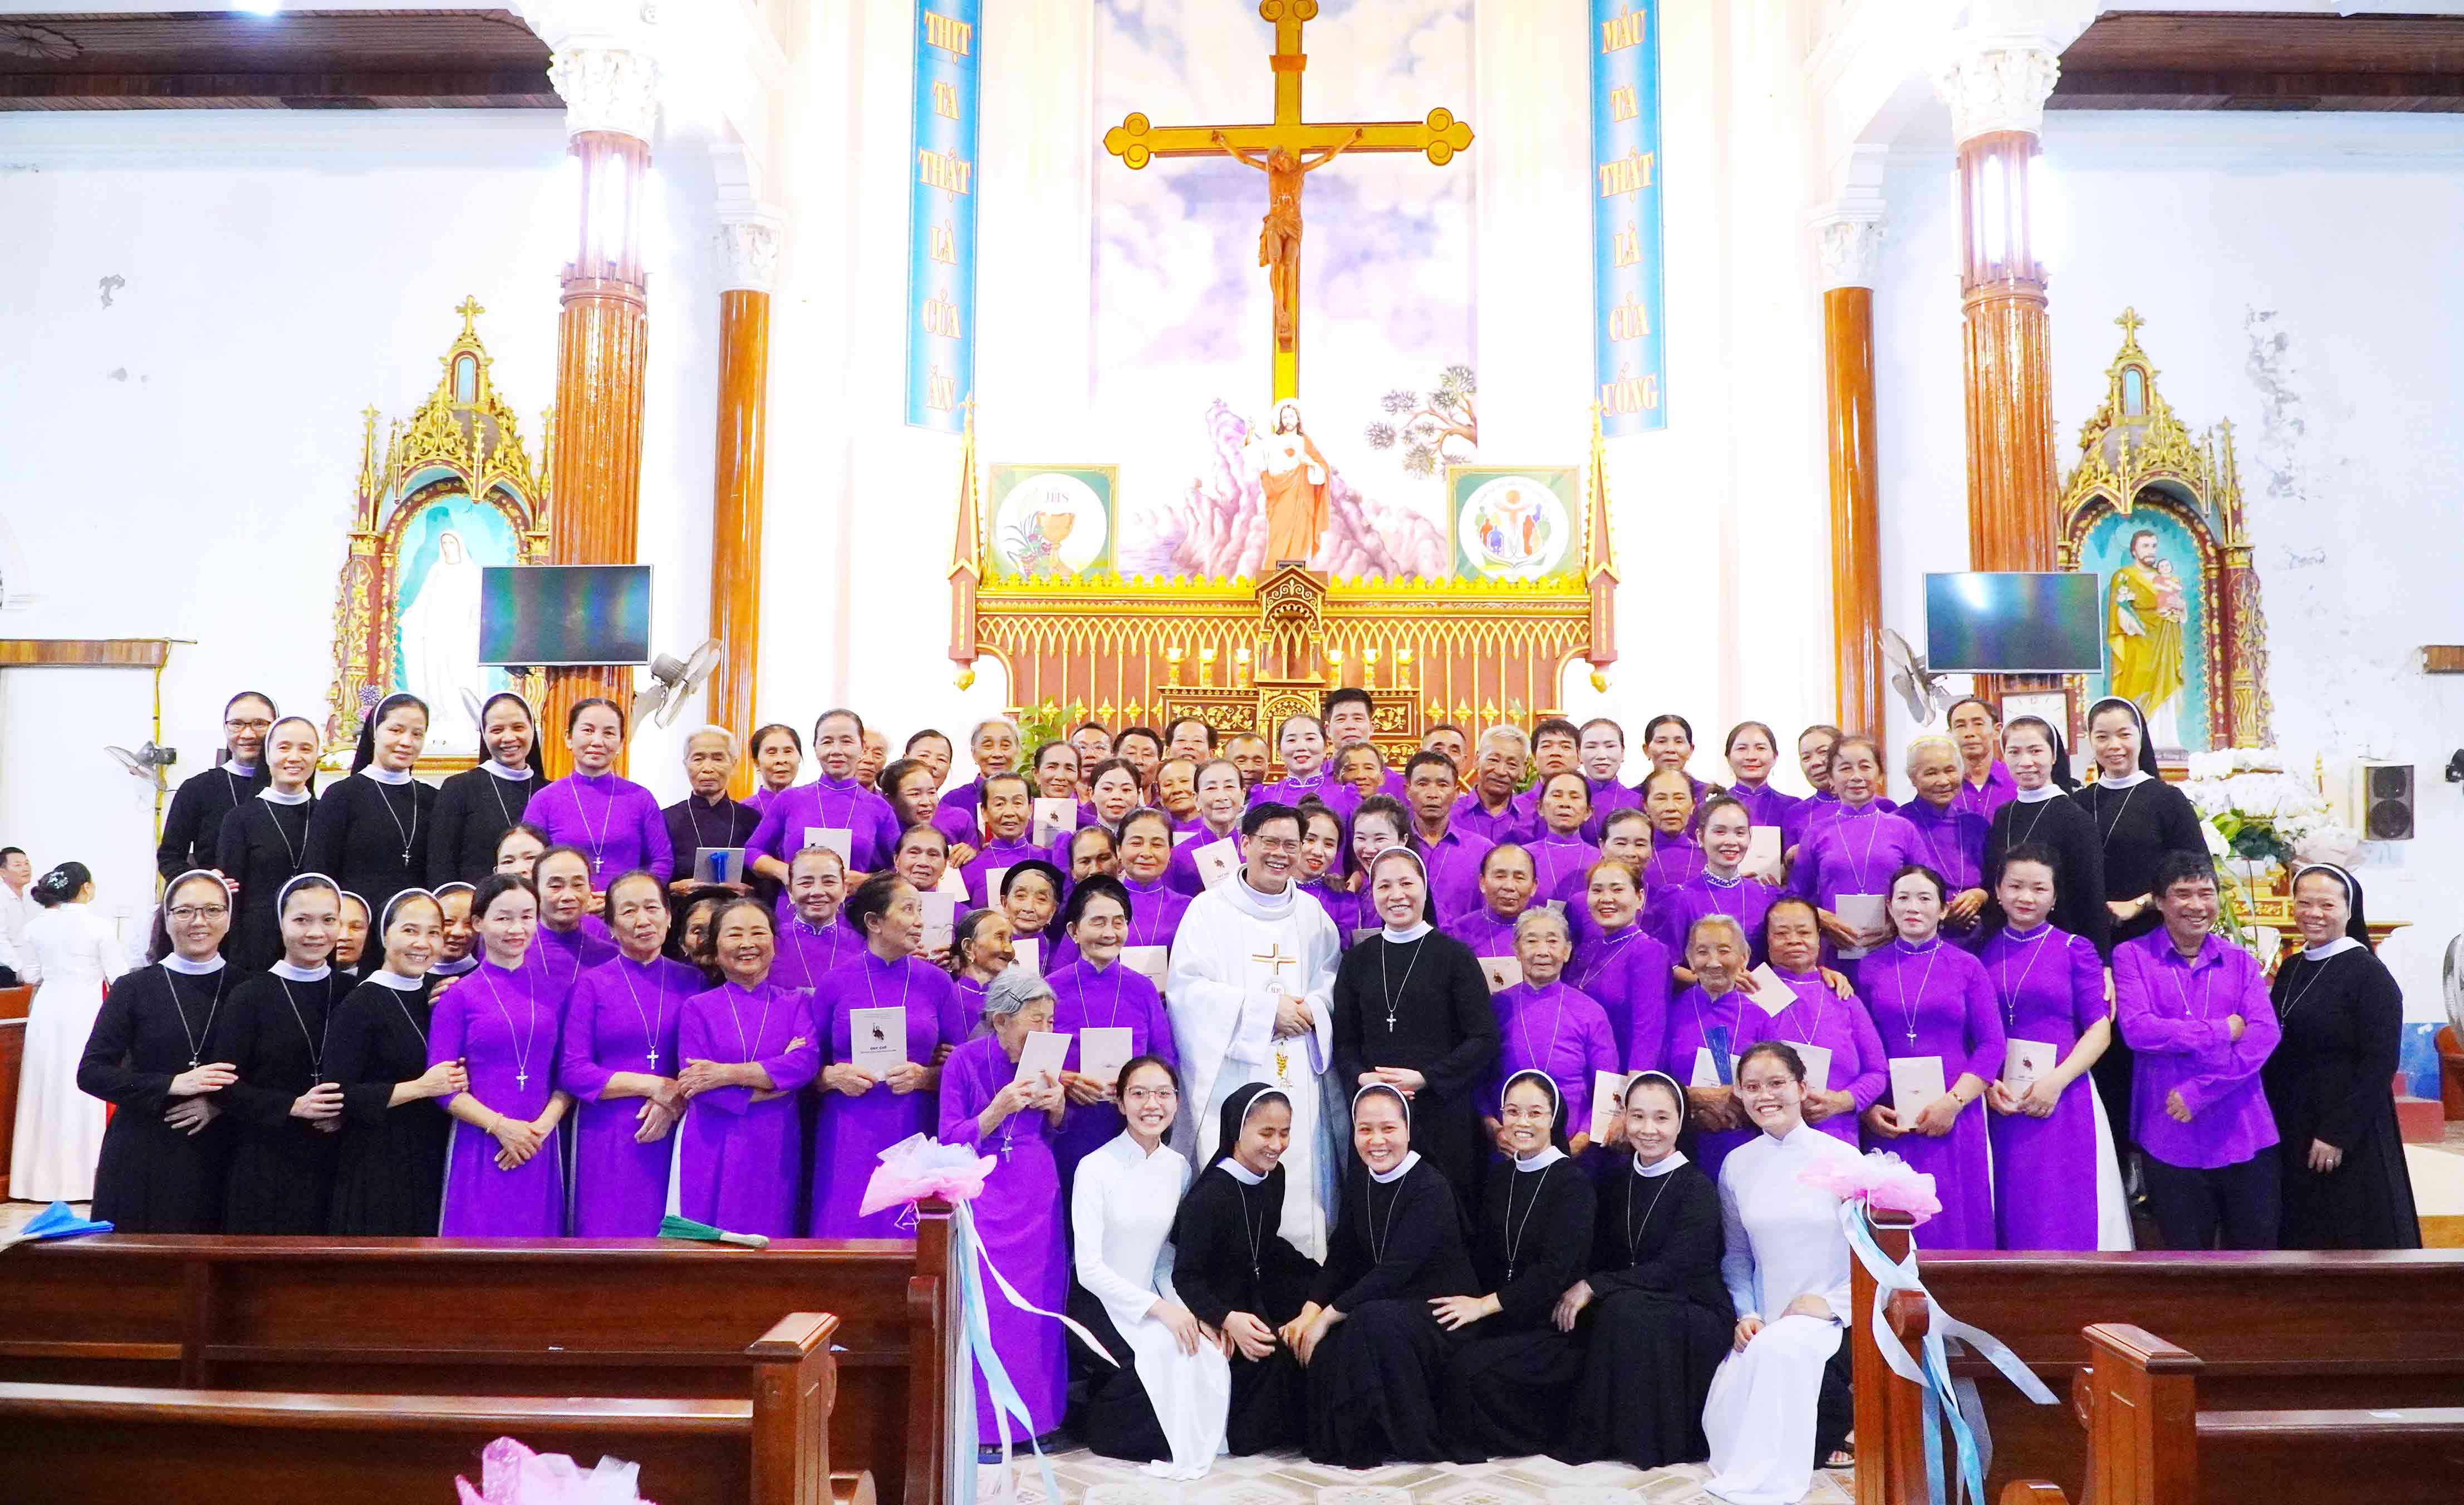 Hiệp Hội Tín Hữu MTG Vinh tiếp tục đón nhận 49 thành viên mới thuộc Giáo xứ Thu Chỉ - Giáo phận Hà Tĩnh